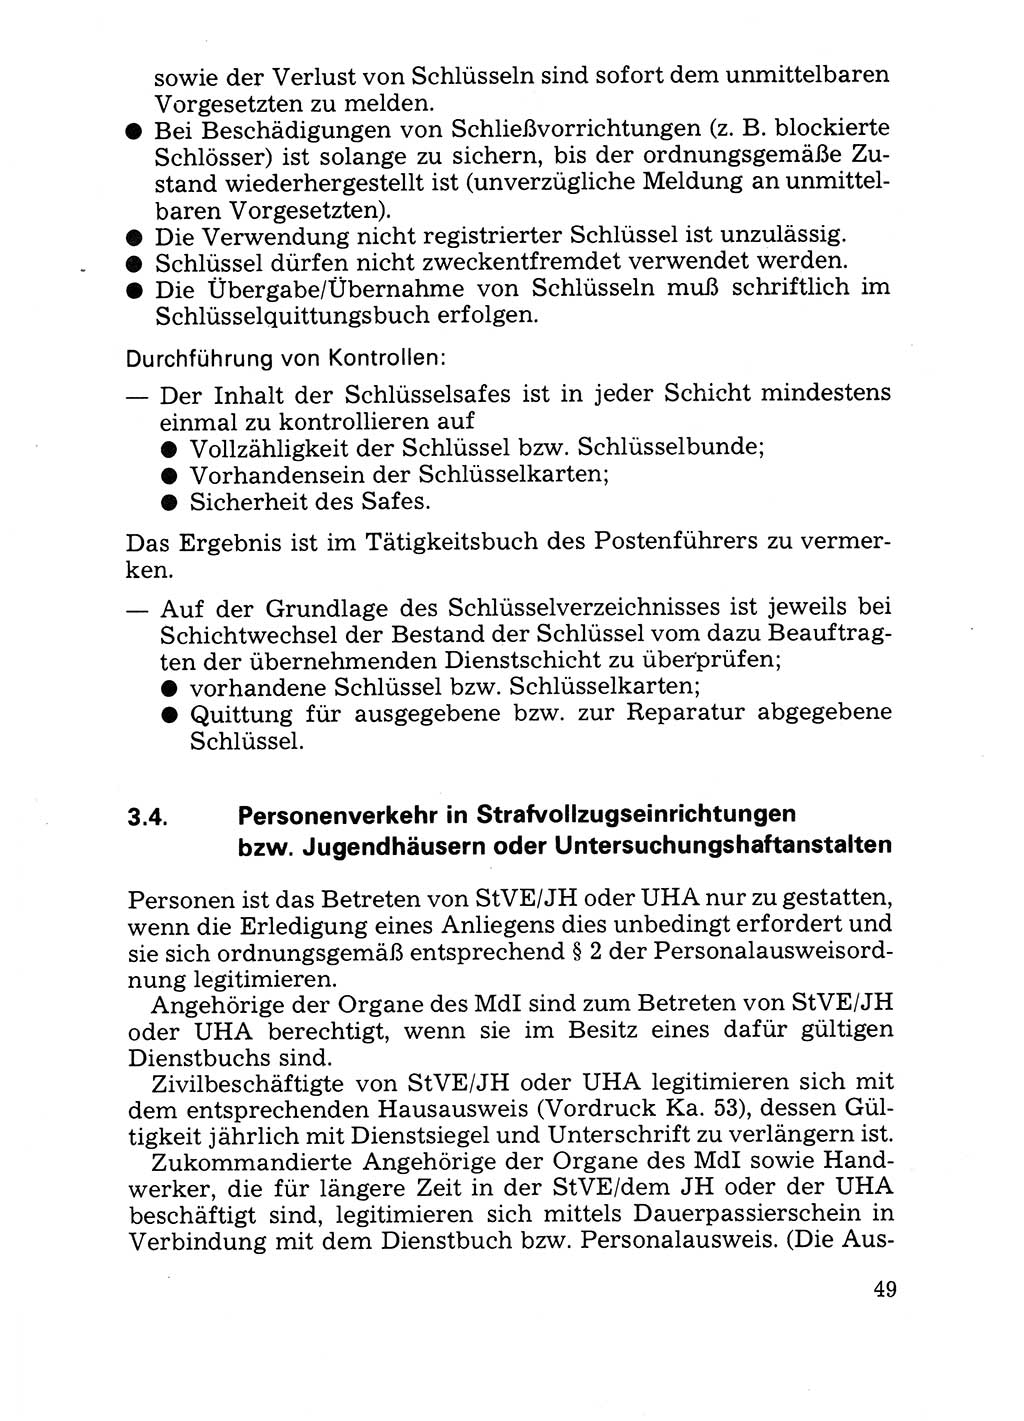 Handbuch für operative Dienste, Abteilung Strafvollzug (SV) [Ministerium des Innern (MdI) Deutsche Demokratische Republik (DDR)] 1981, Seite 49 (Hb. op. D. Abt. SV MdI DDR 1981, S. 49)